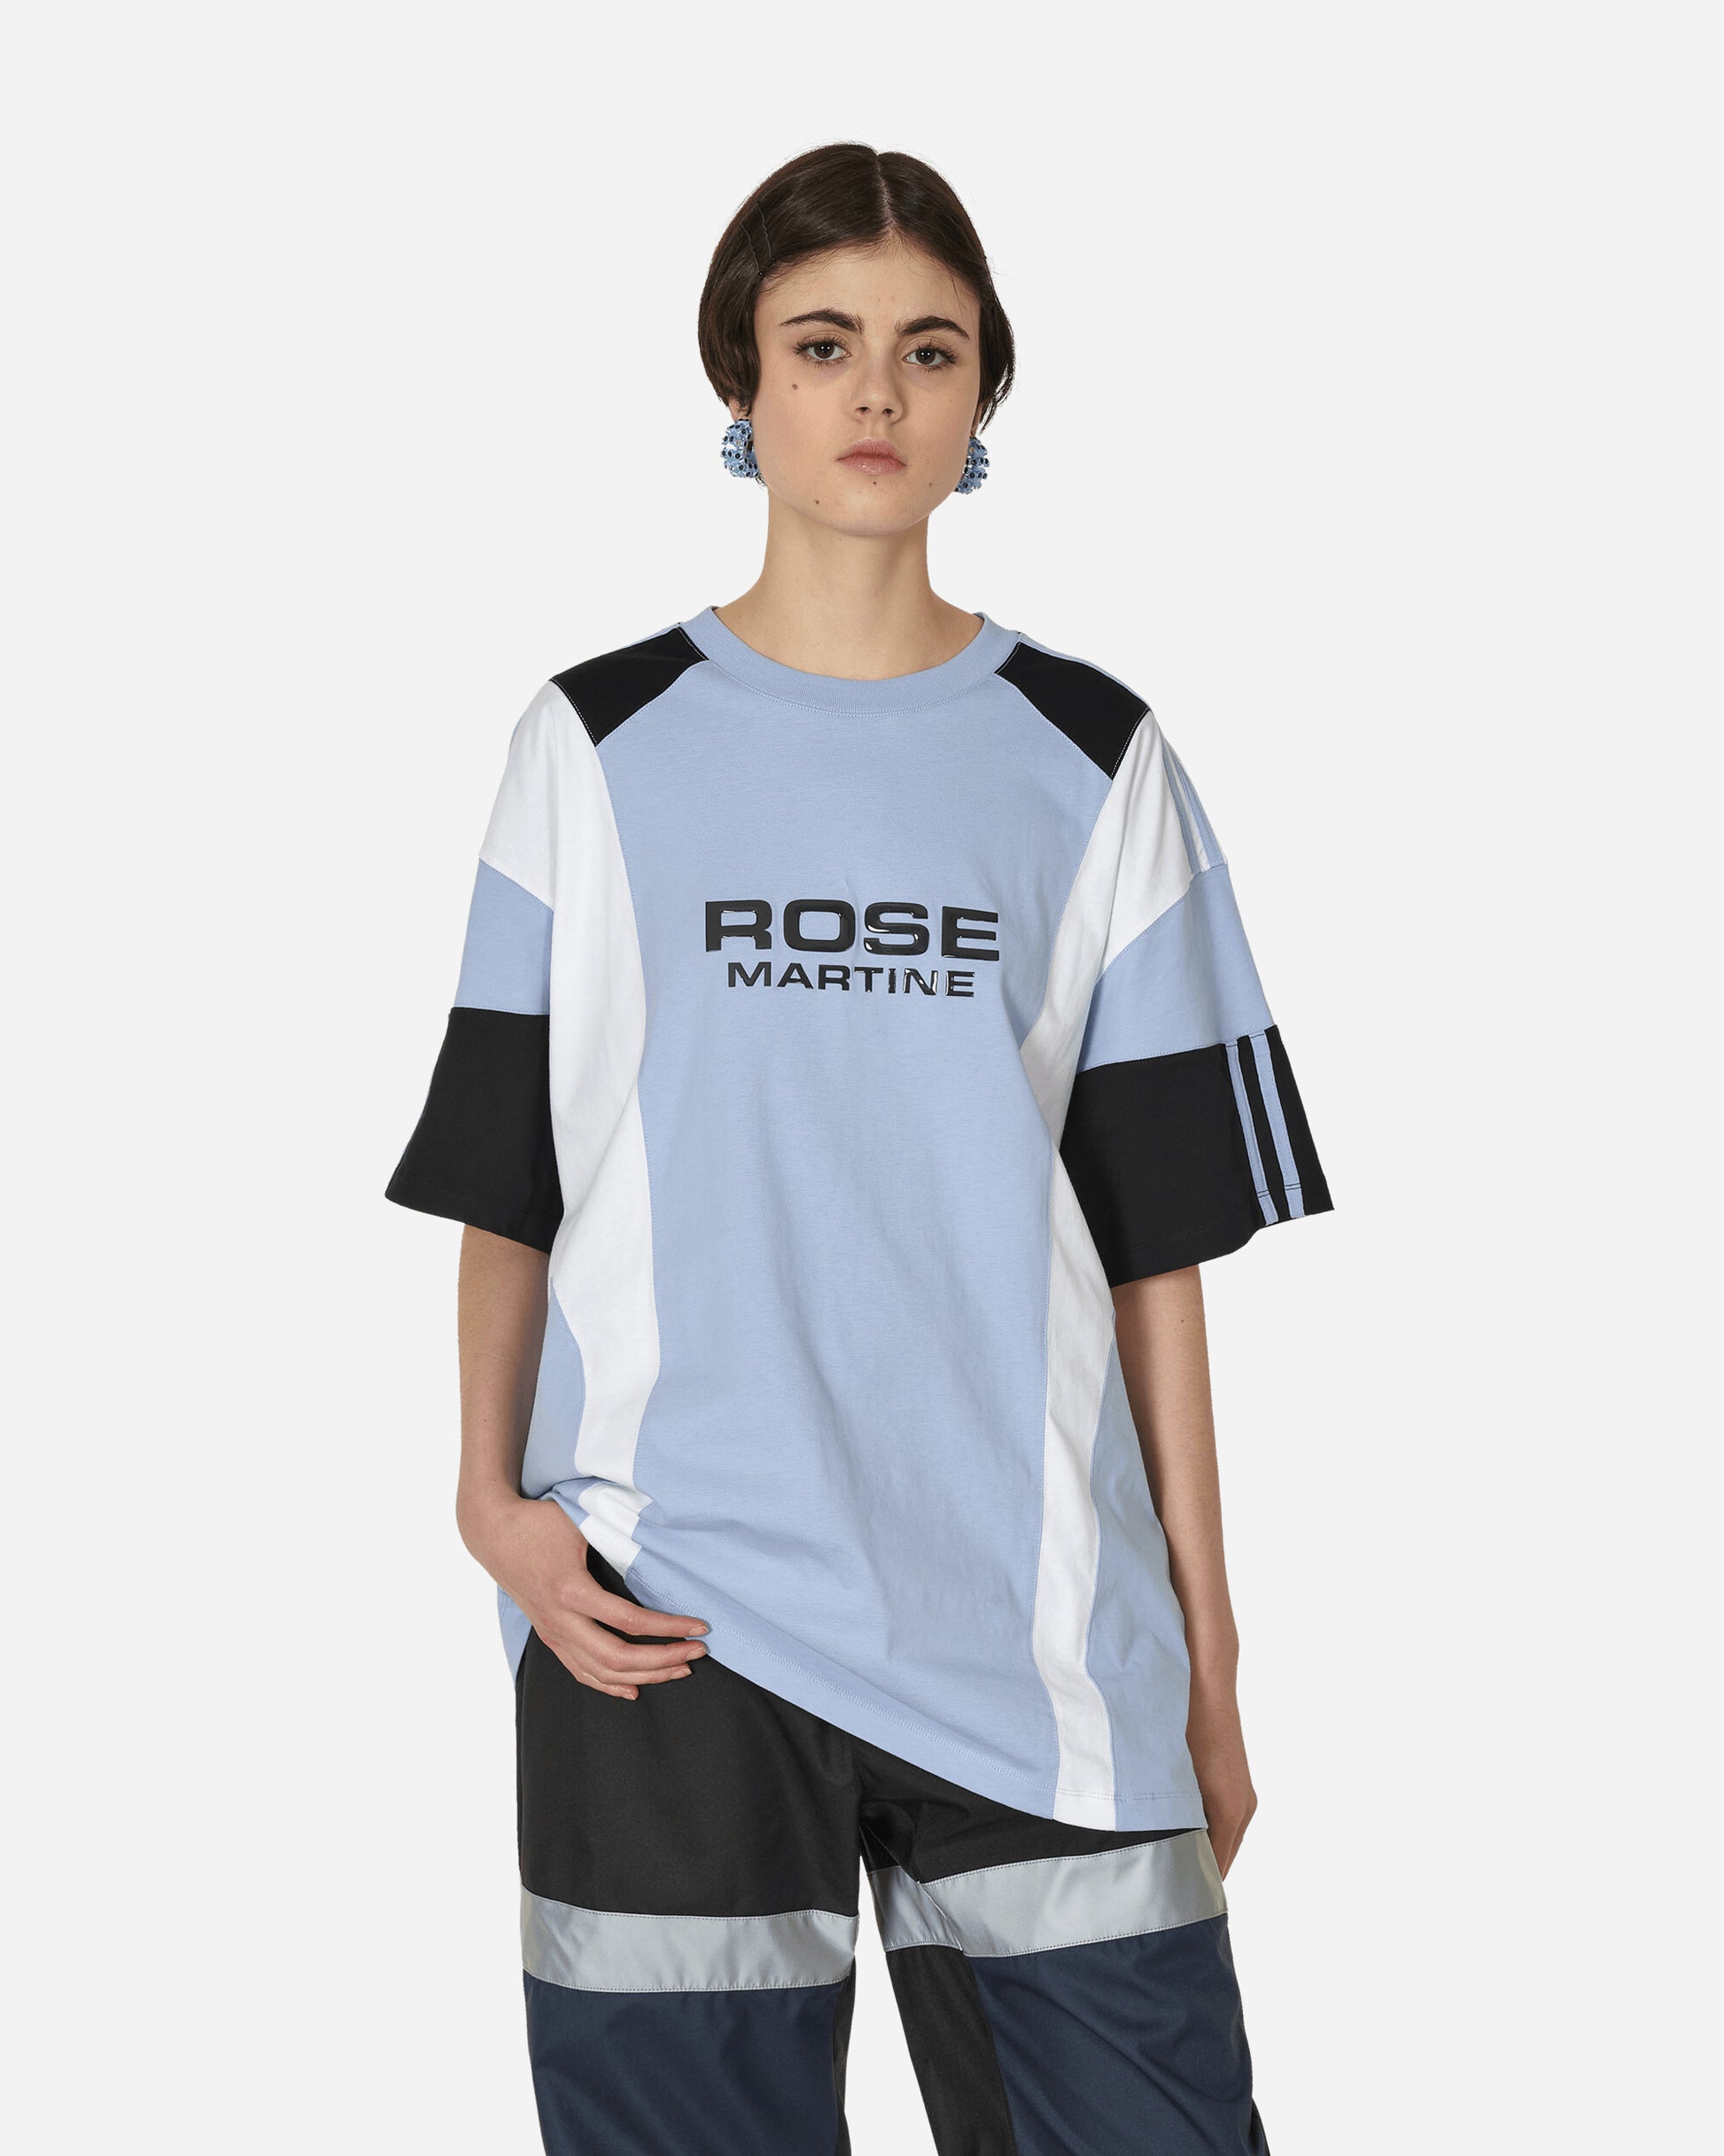 Martine Rose Oversized Panelled T-Shirt Blue/White/Black T-Shirts Shortsleeve MRSS24-630 BWHIBL